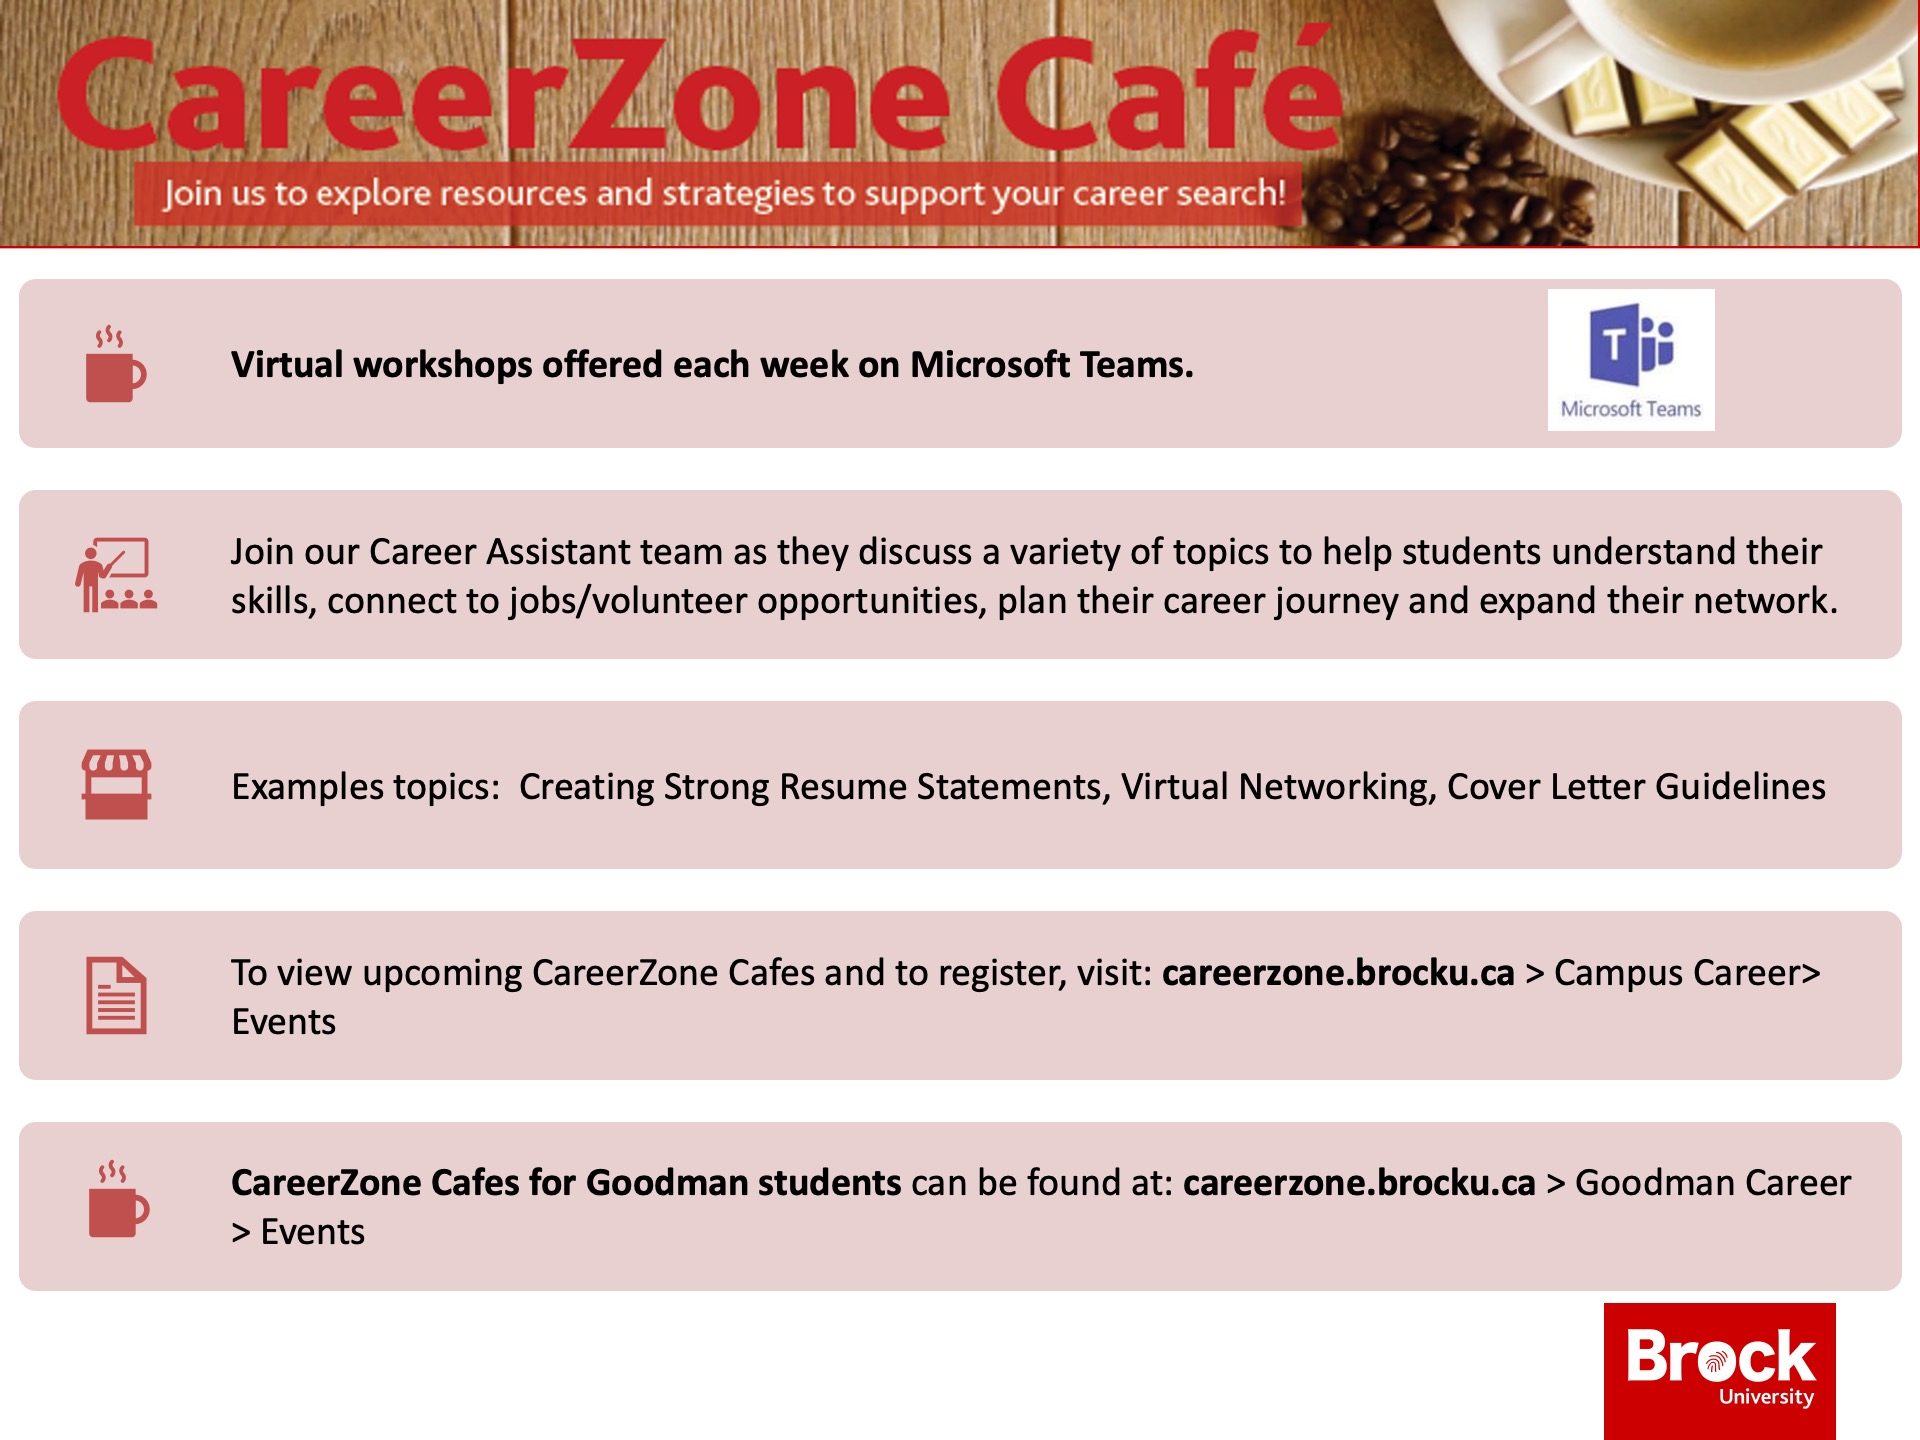 CareerZone Cafe